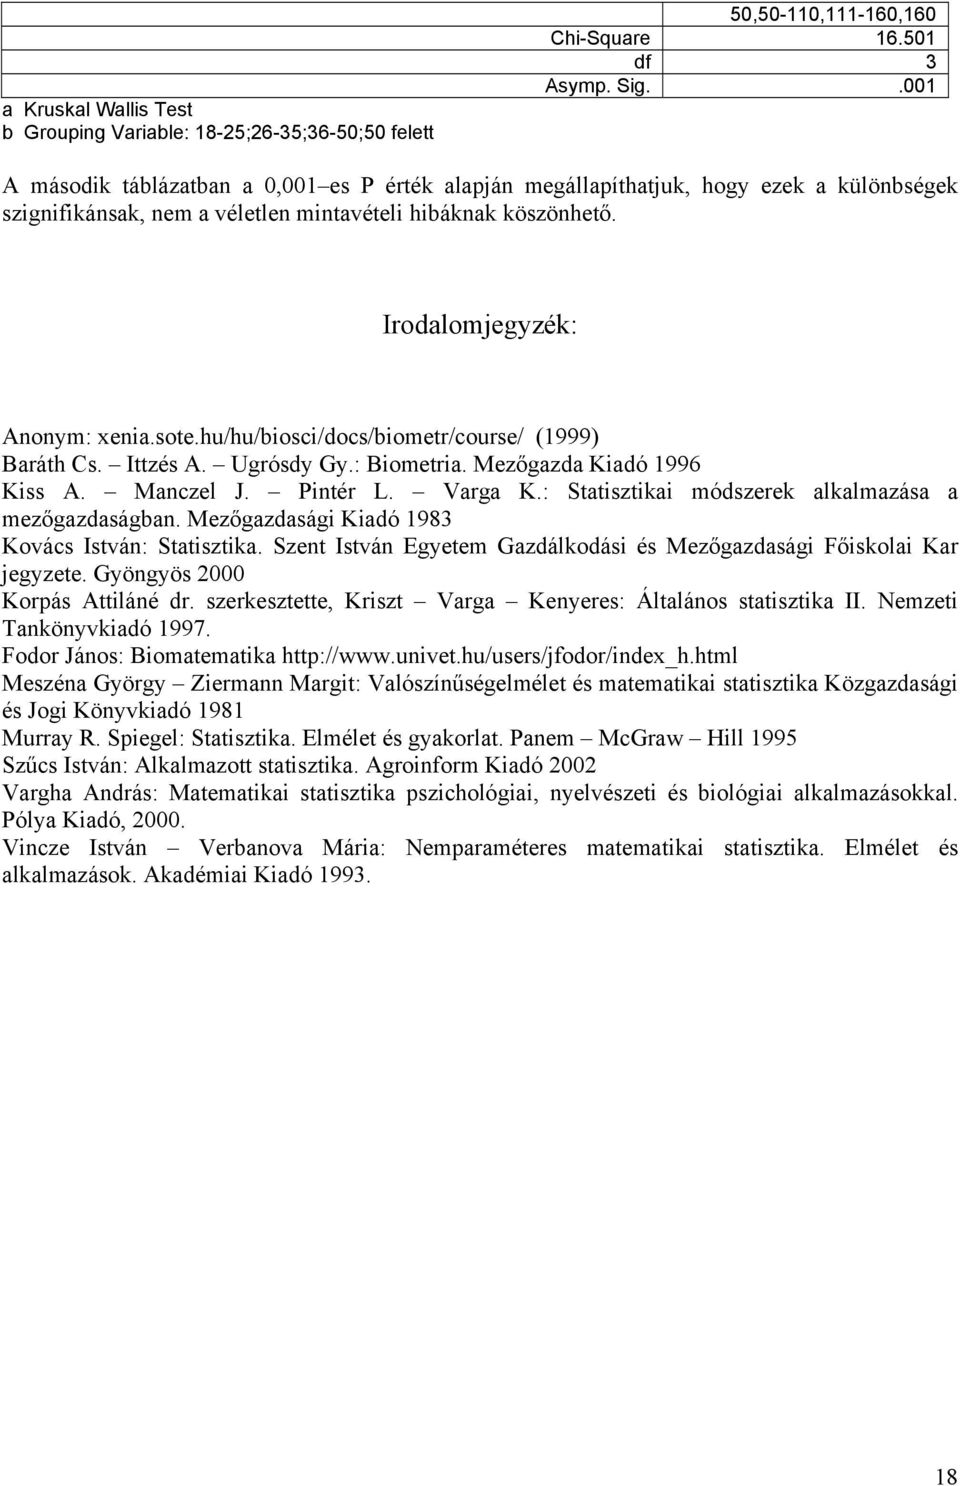 hu/hu/biosci/docs/biometr/course/ (1999) Baráth Cs. Ittzés A. Ugrósdy Gy.: Biometria. Mezőgazda Kiadó 1996 Kiss A. Manczel J. Pintér L. Varga K.: Statisztikai módszerek alkalmazása a mezőgazdaságban.